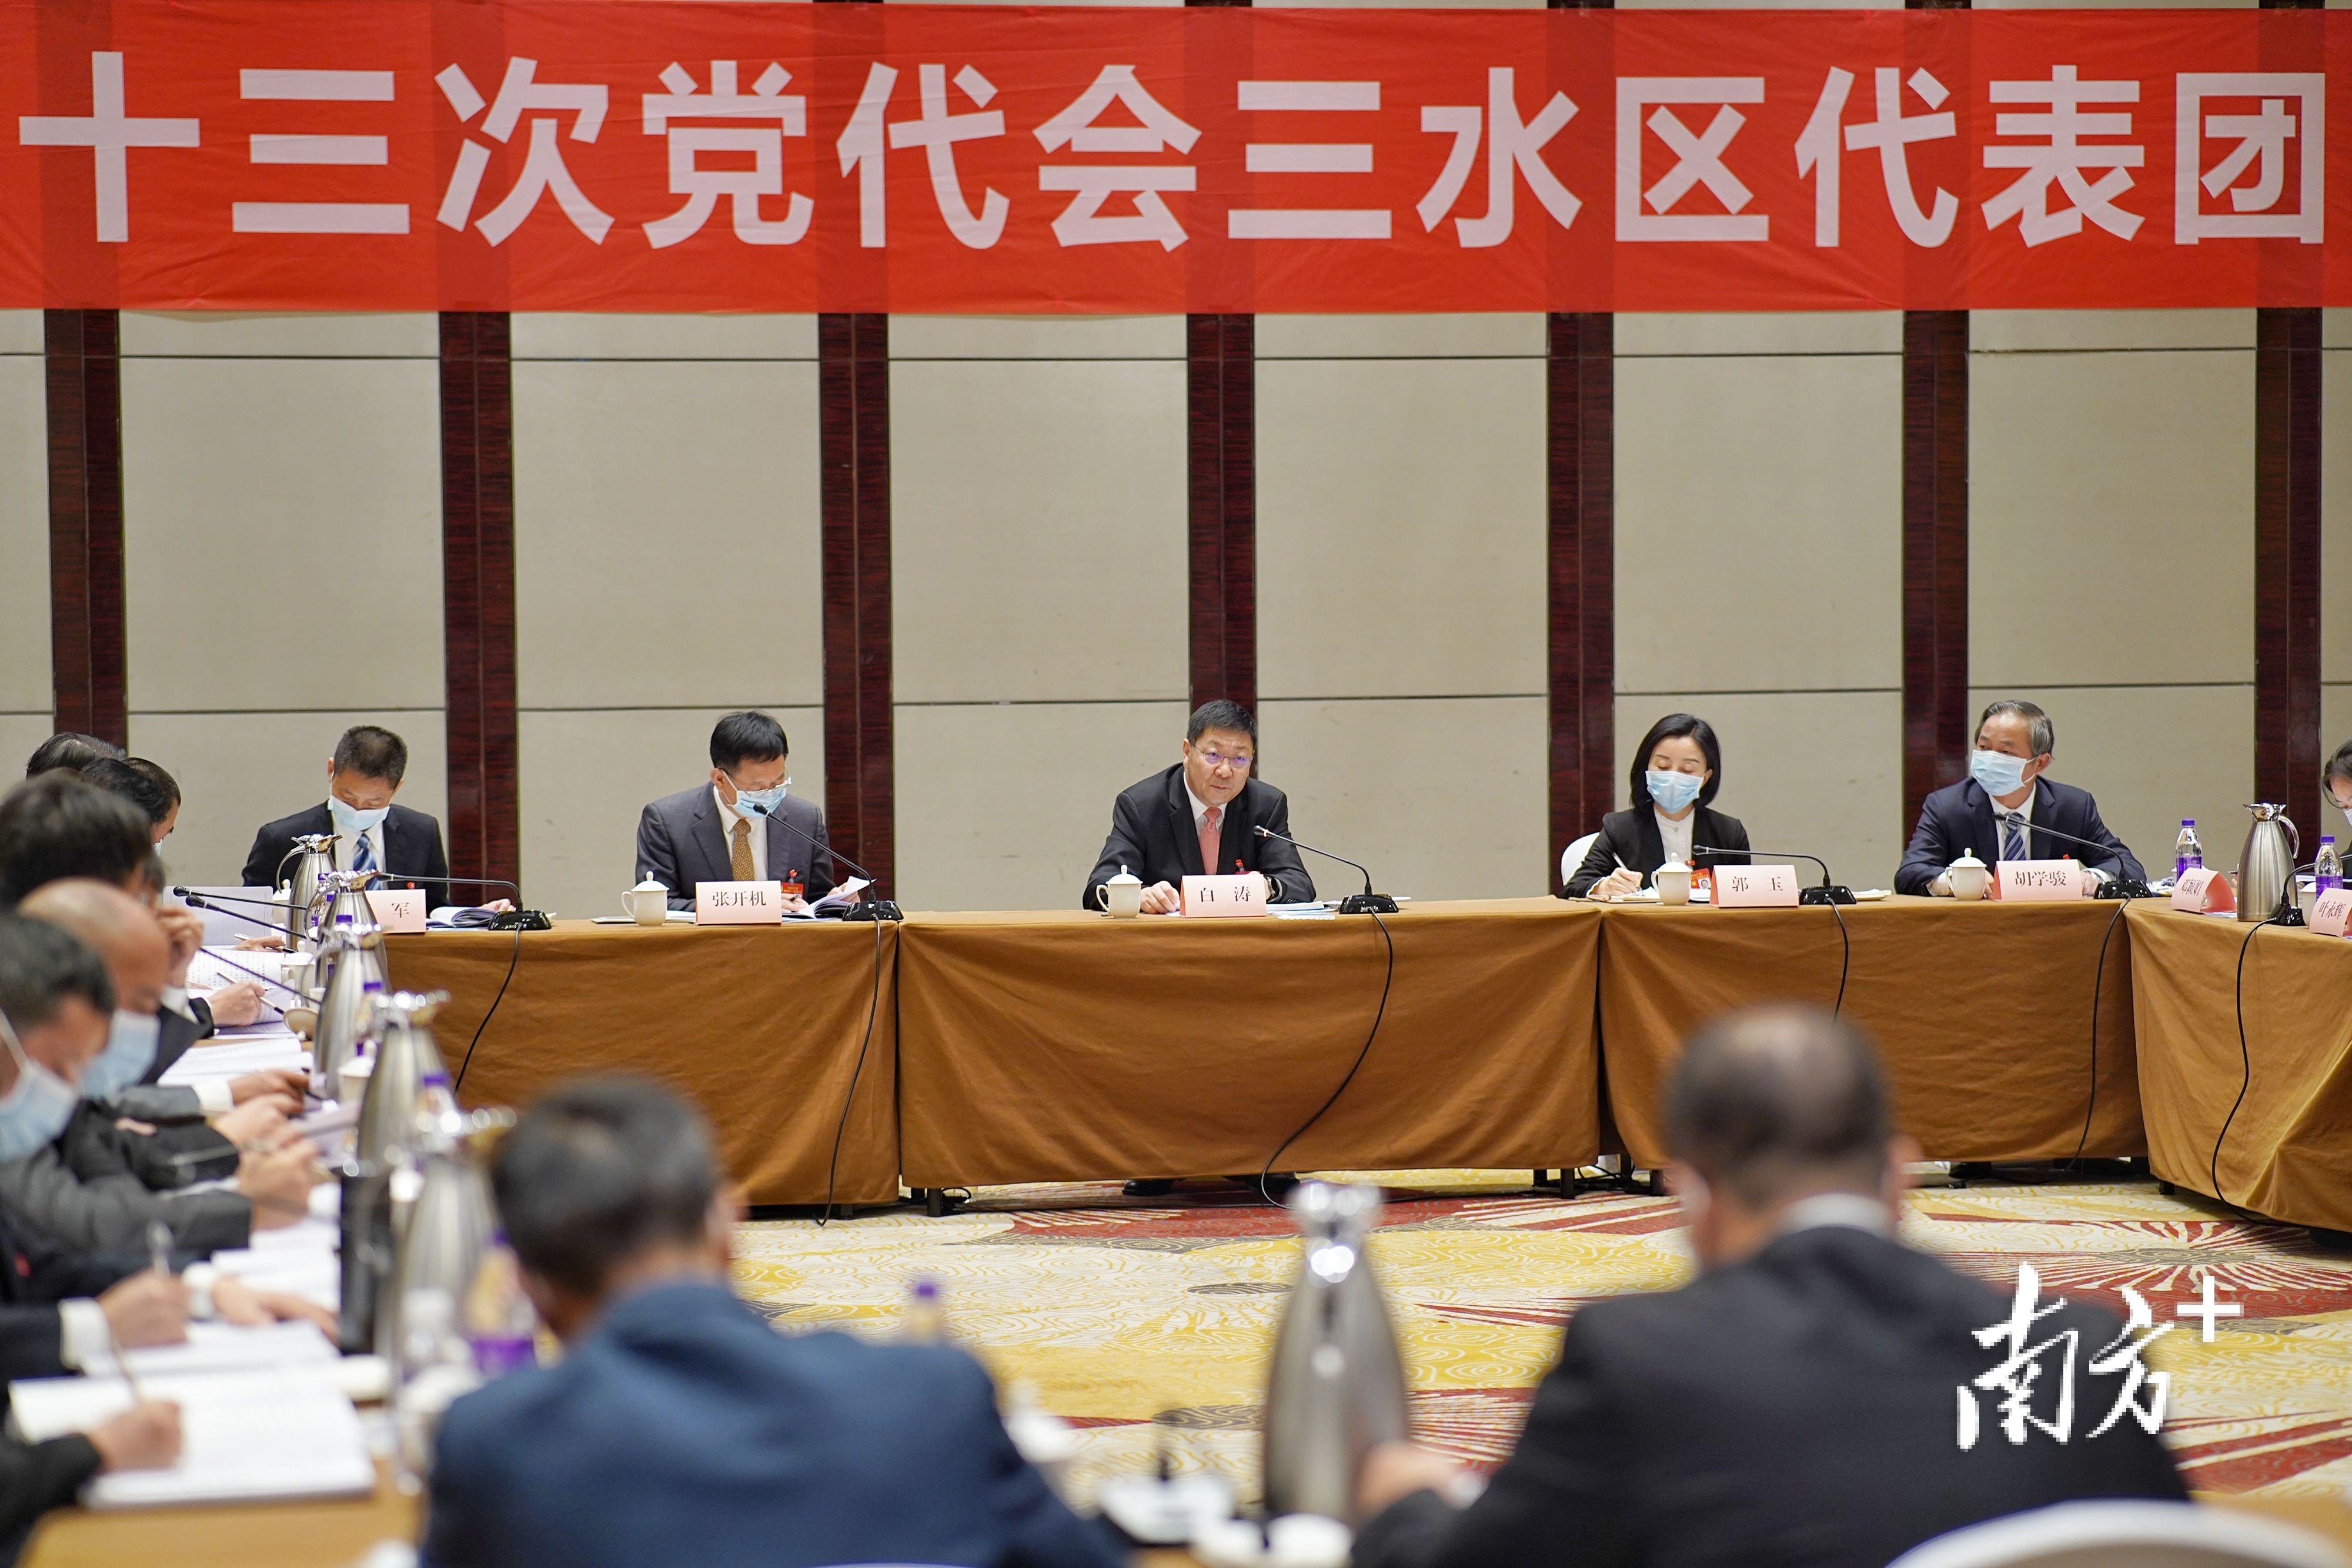 白涛参加三水区代表团分组讨论。